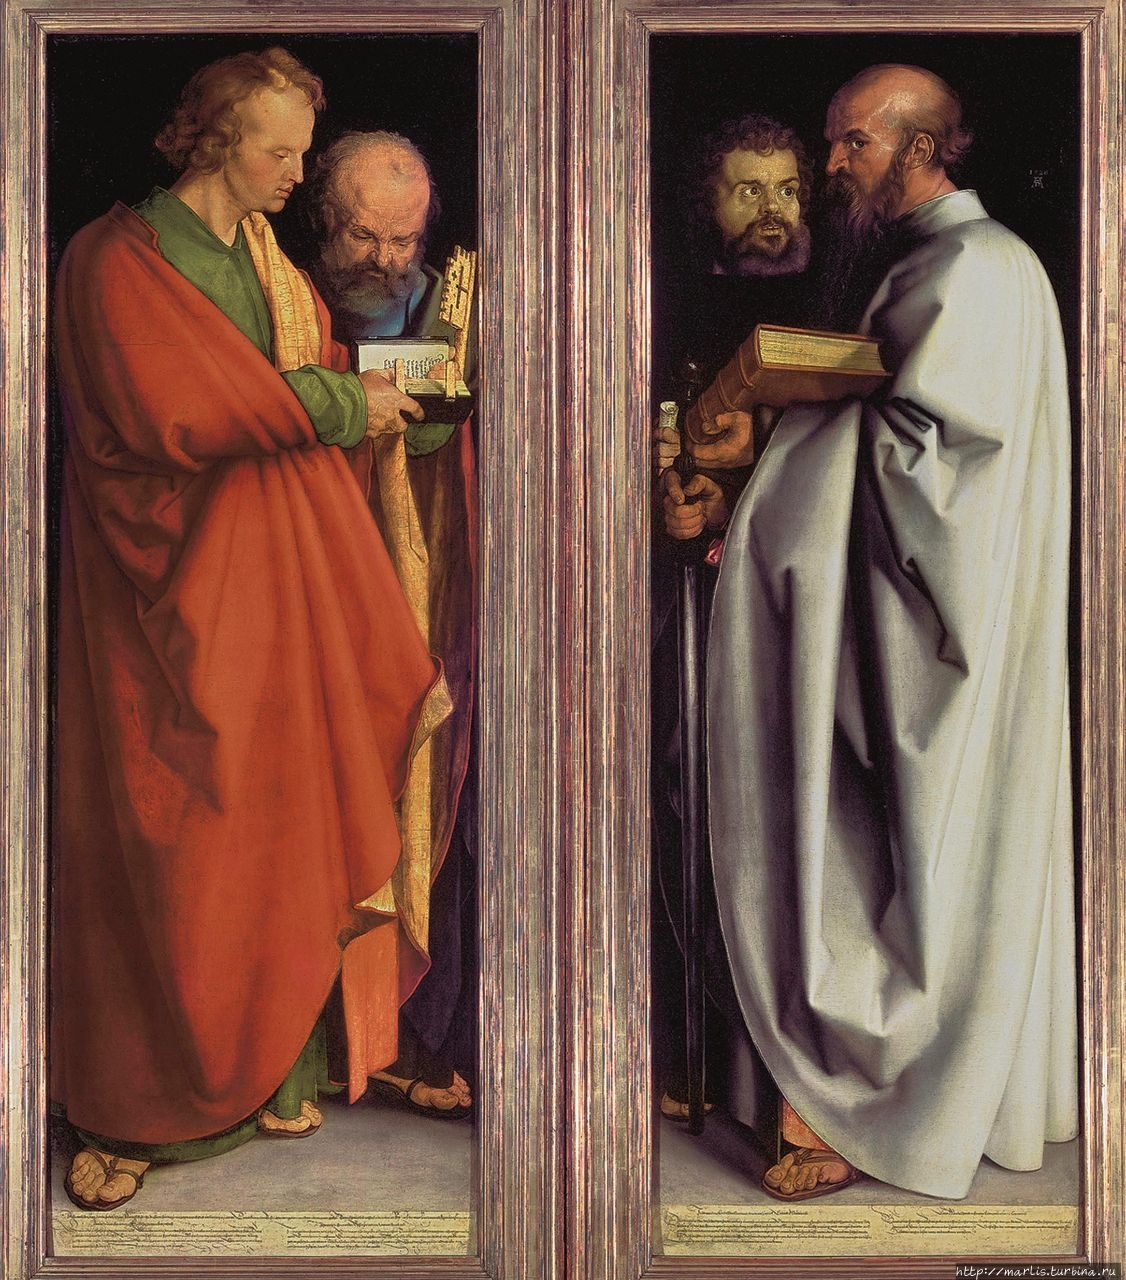 Альбрехт Дюрер. Четыре апостола. 1526
Старая пинакотека, Мюнхен.
Johannes, Petrus, Markus und Paulus Нюрнберг, Германия